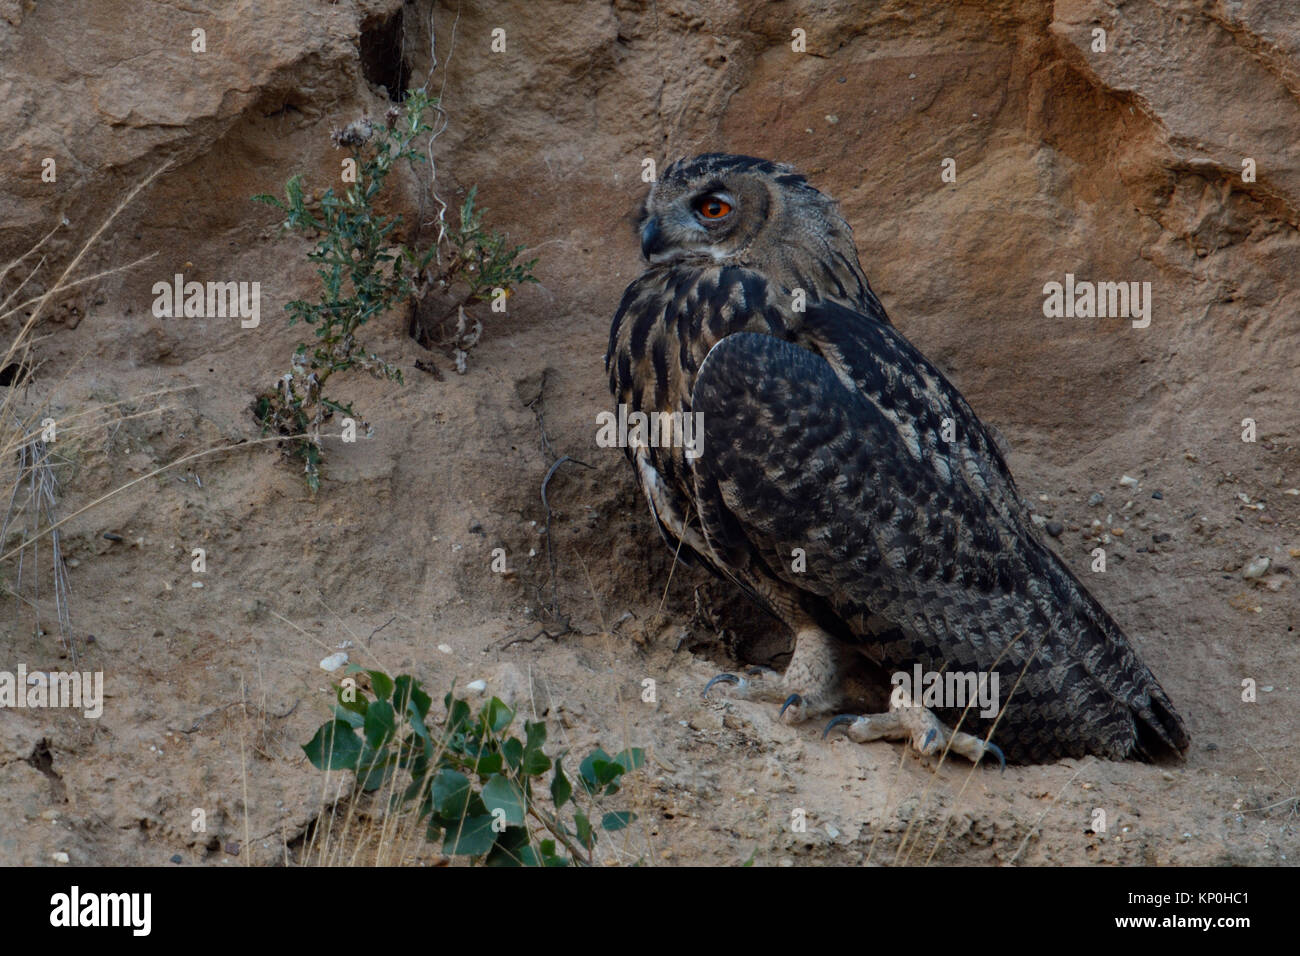 Grand / Owl Bubo bubo Europaeischer Uhu ( ), jeune oiseau, perché sur la pente abrupte d'un bac à sable, au crépuscule, la nuit tombée, la faune, l'Europe. Banque D'Images